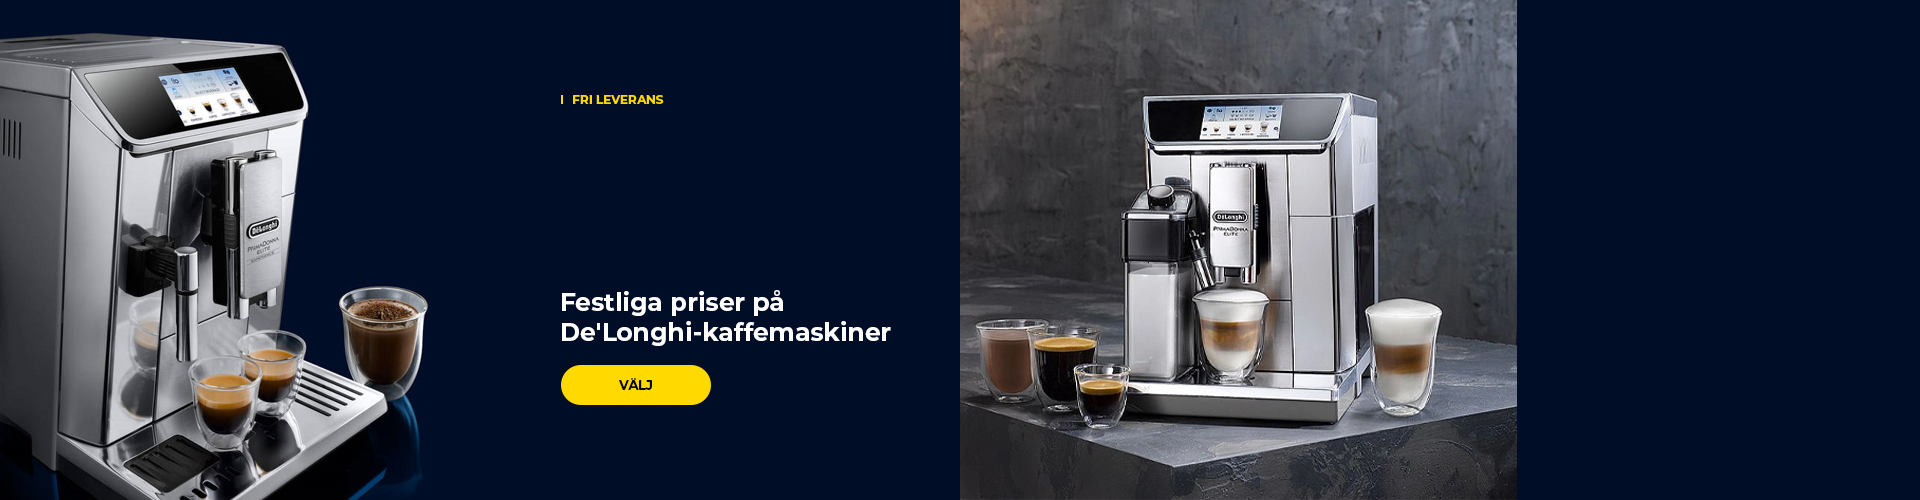 Festliga priser på De'Longhi-kaffemaskiner